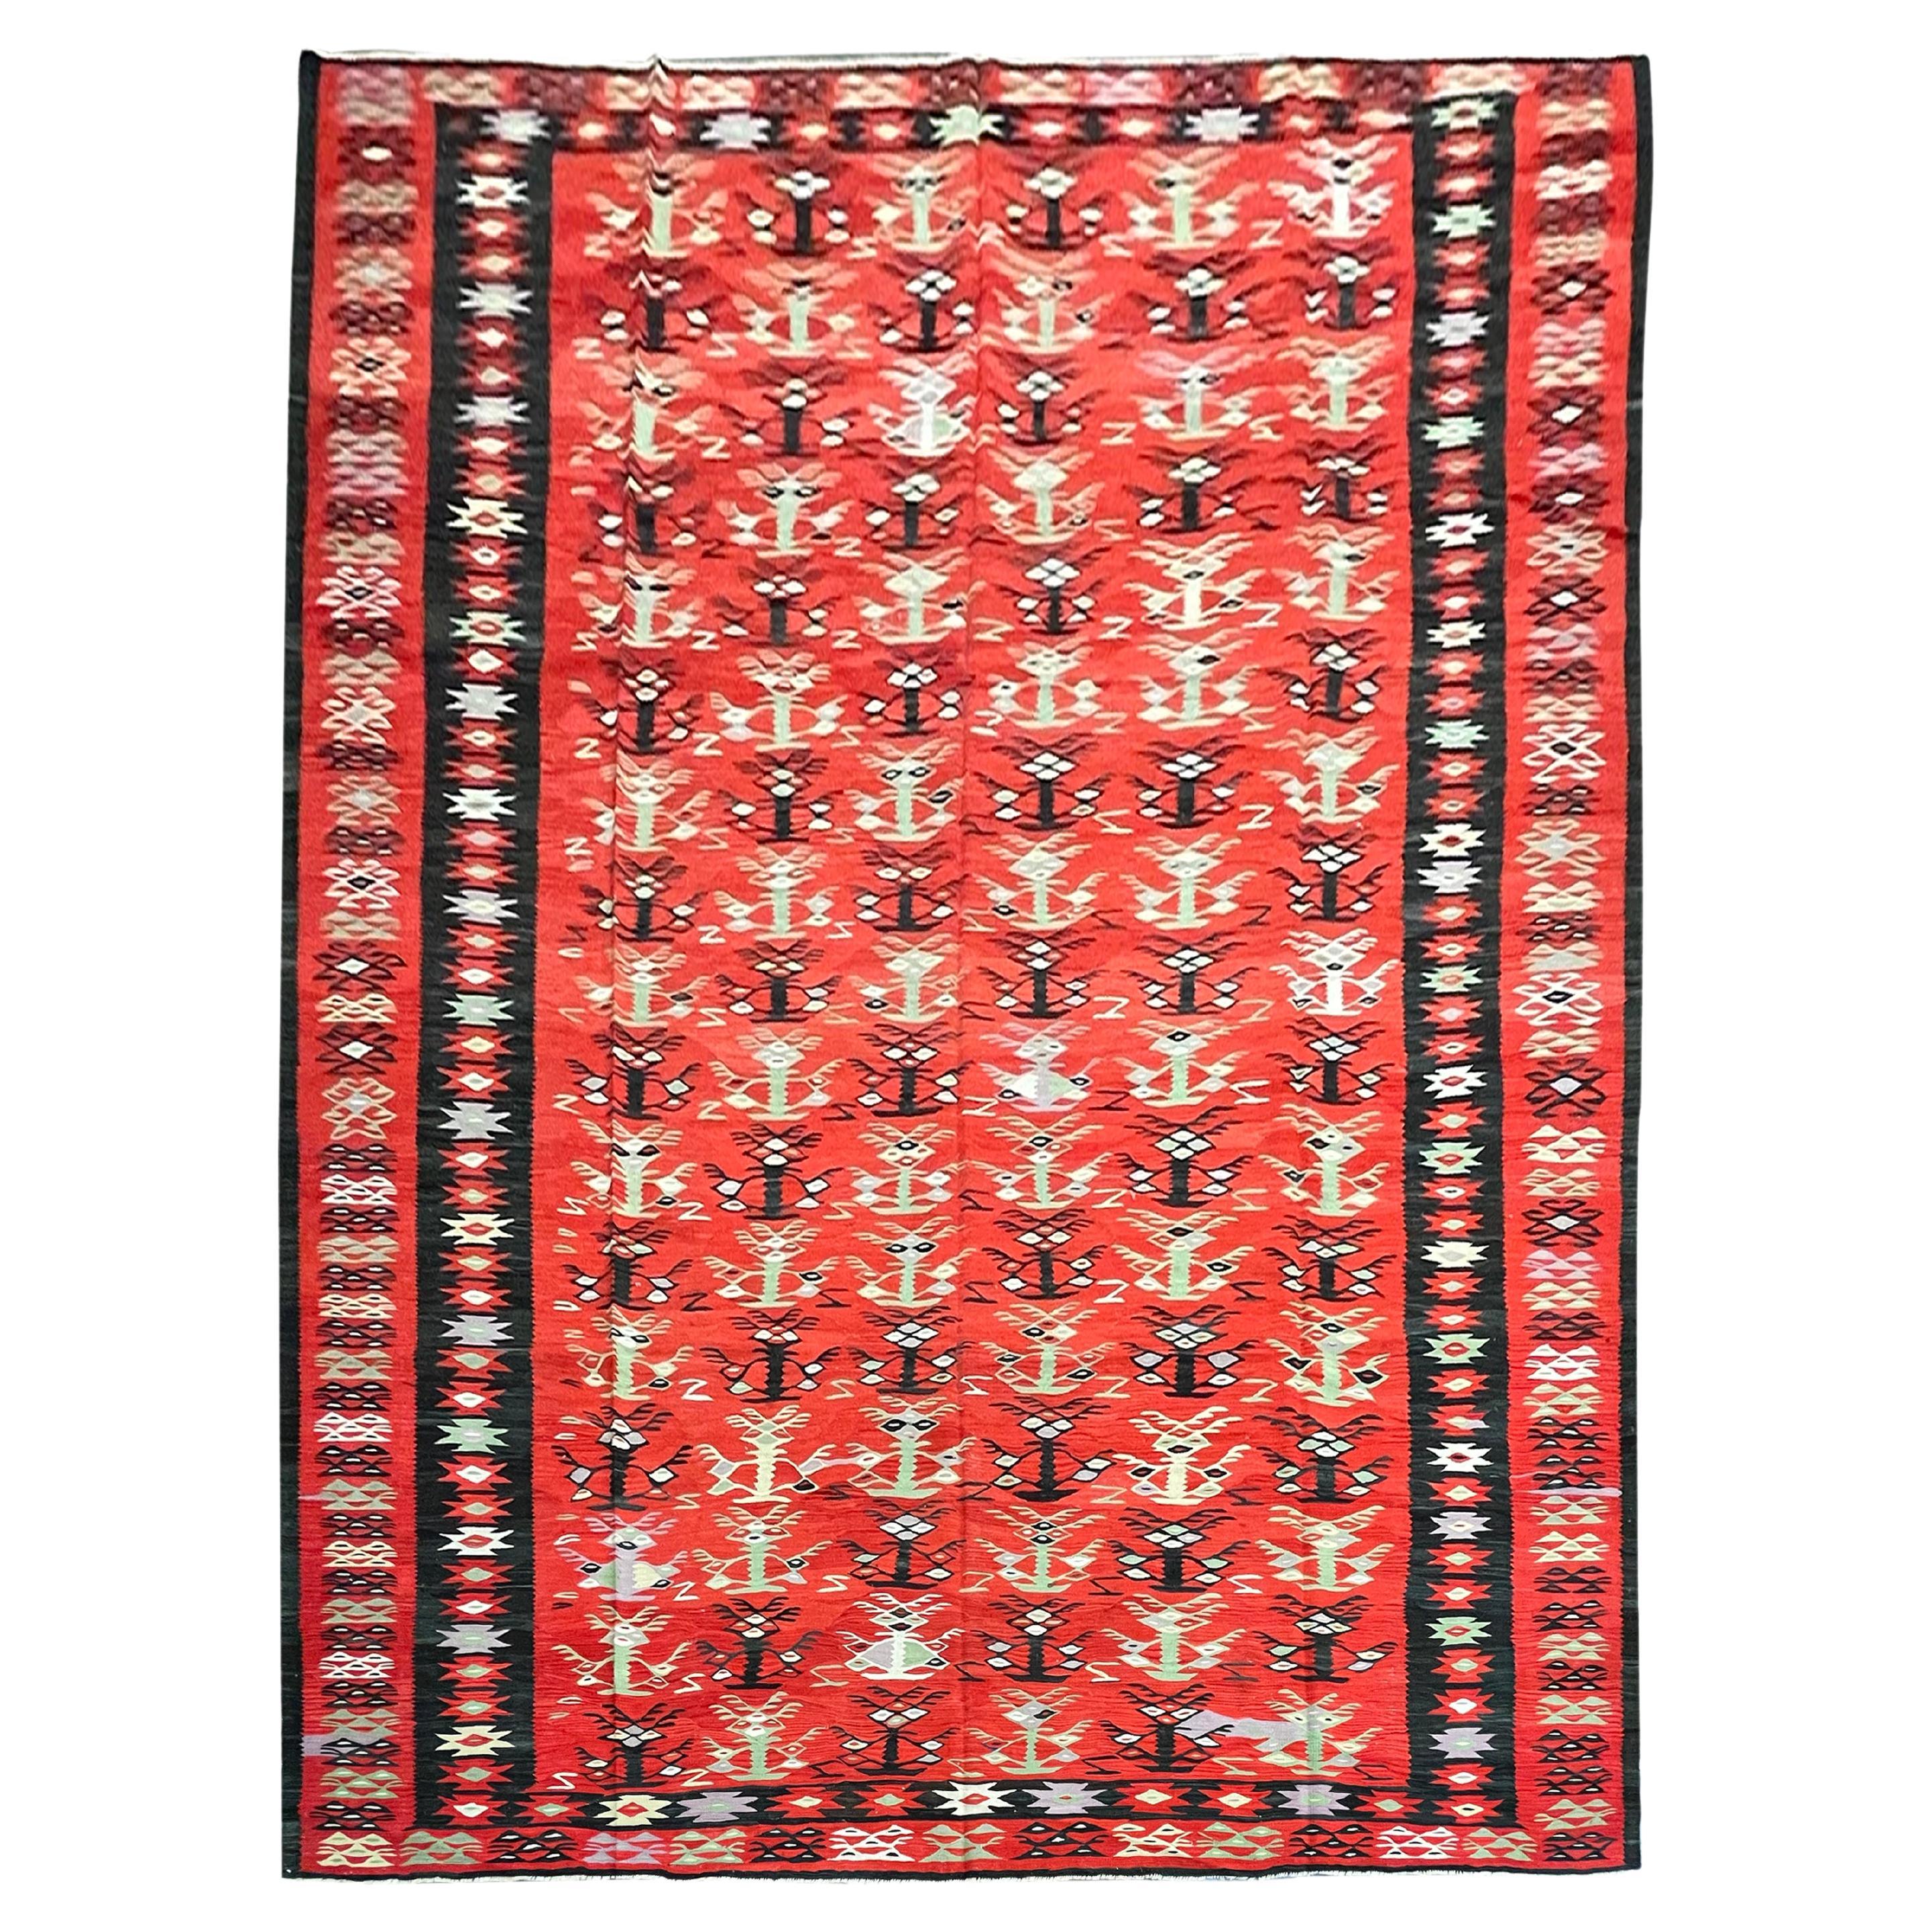 Grand tapis Kilim anatolien ancien fait à la main en laine rouge tissé à plat